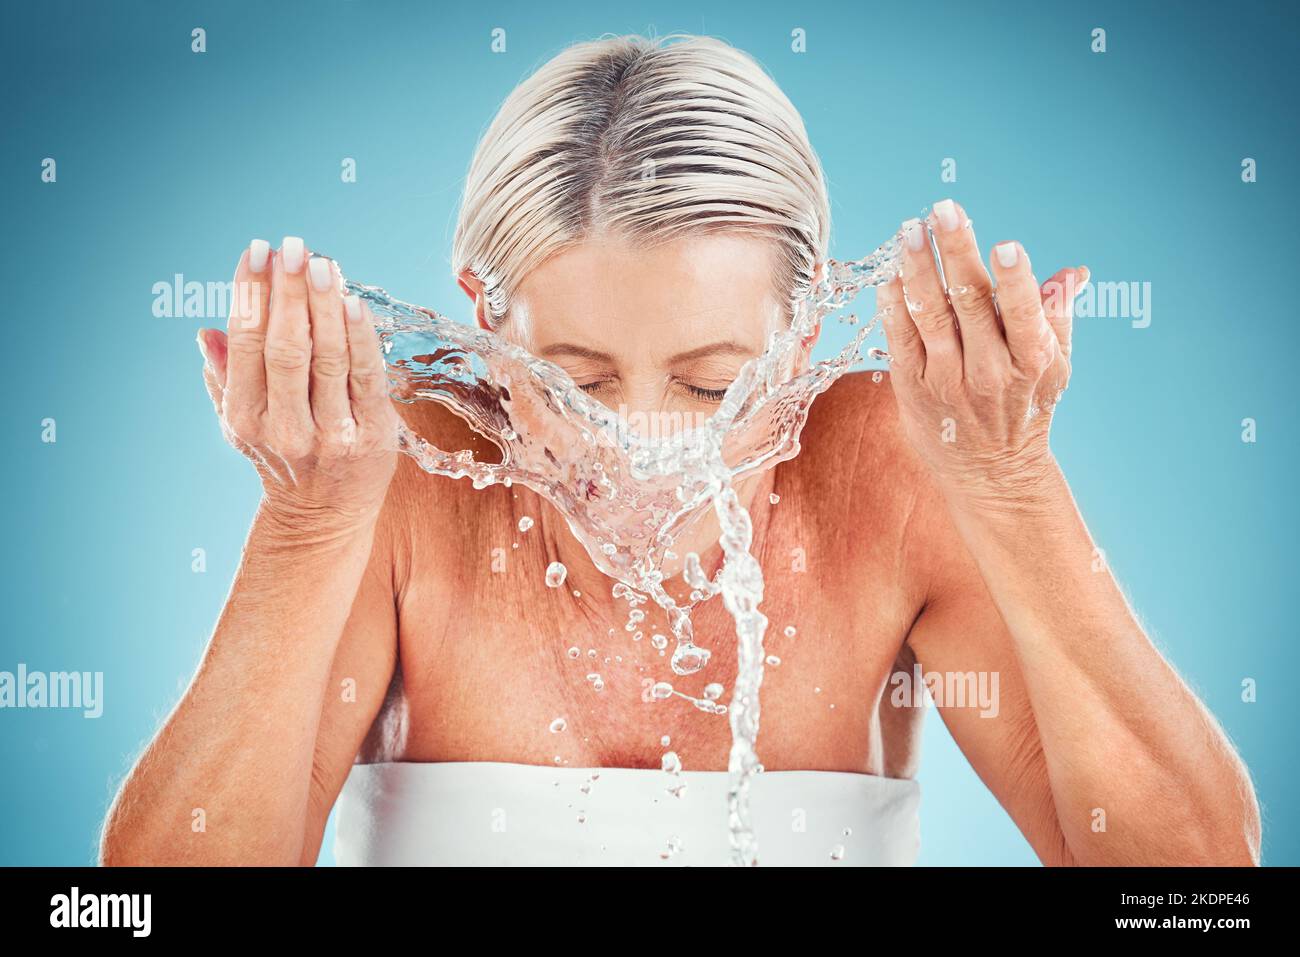 Wasserspritzer, Hautpflege und Bad Gesicht Routine einer älteren Frau mit  Händen und Wasser. Schönheit, Kosmetik und Haut Wellness Gesundheit Routine  von a Stockfotografie - Alamy